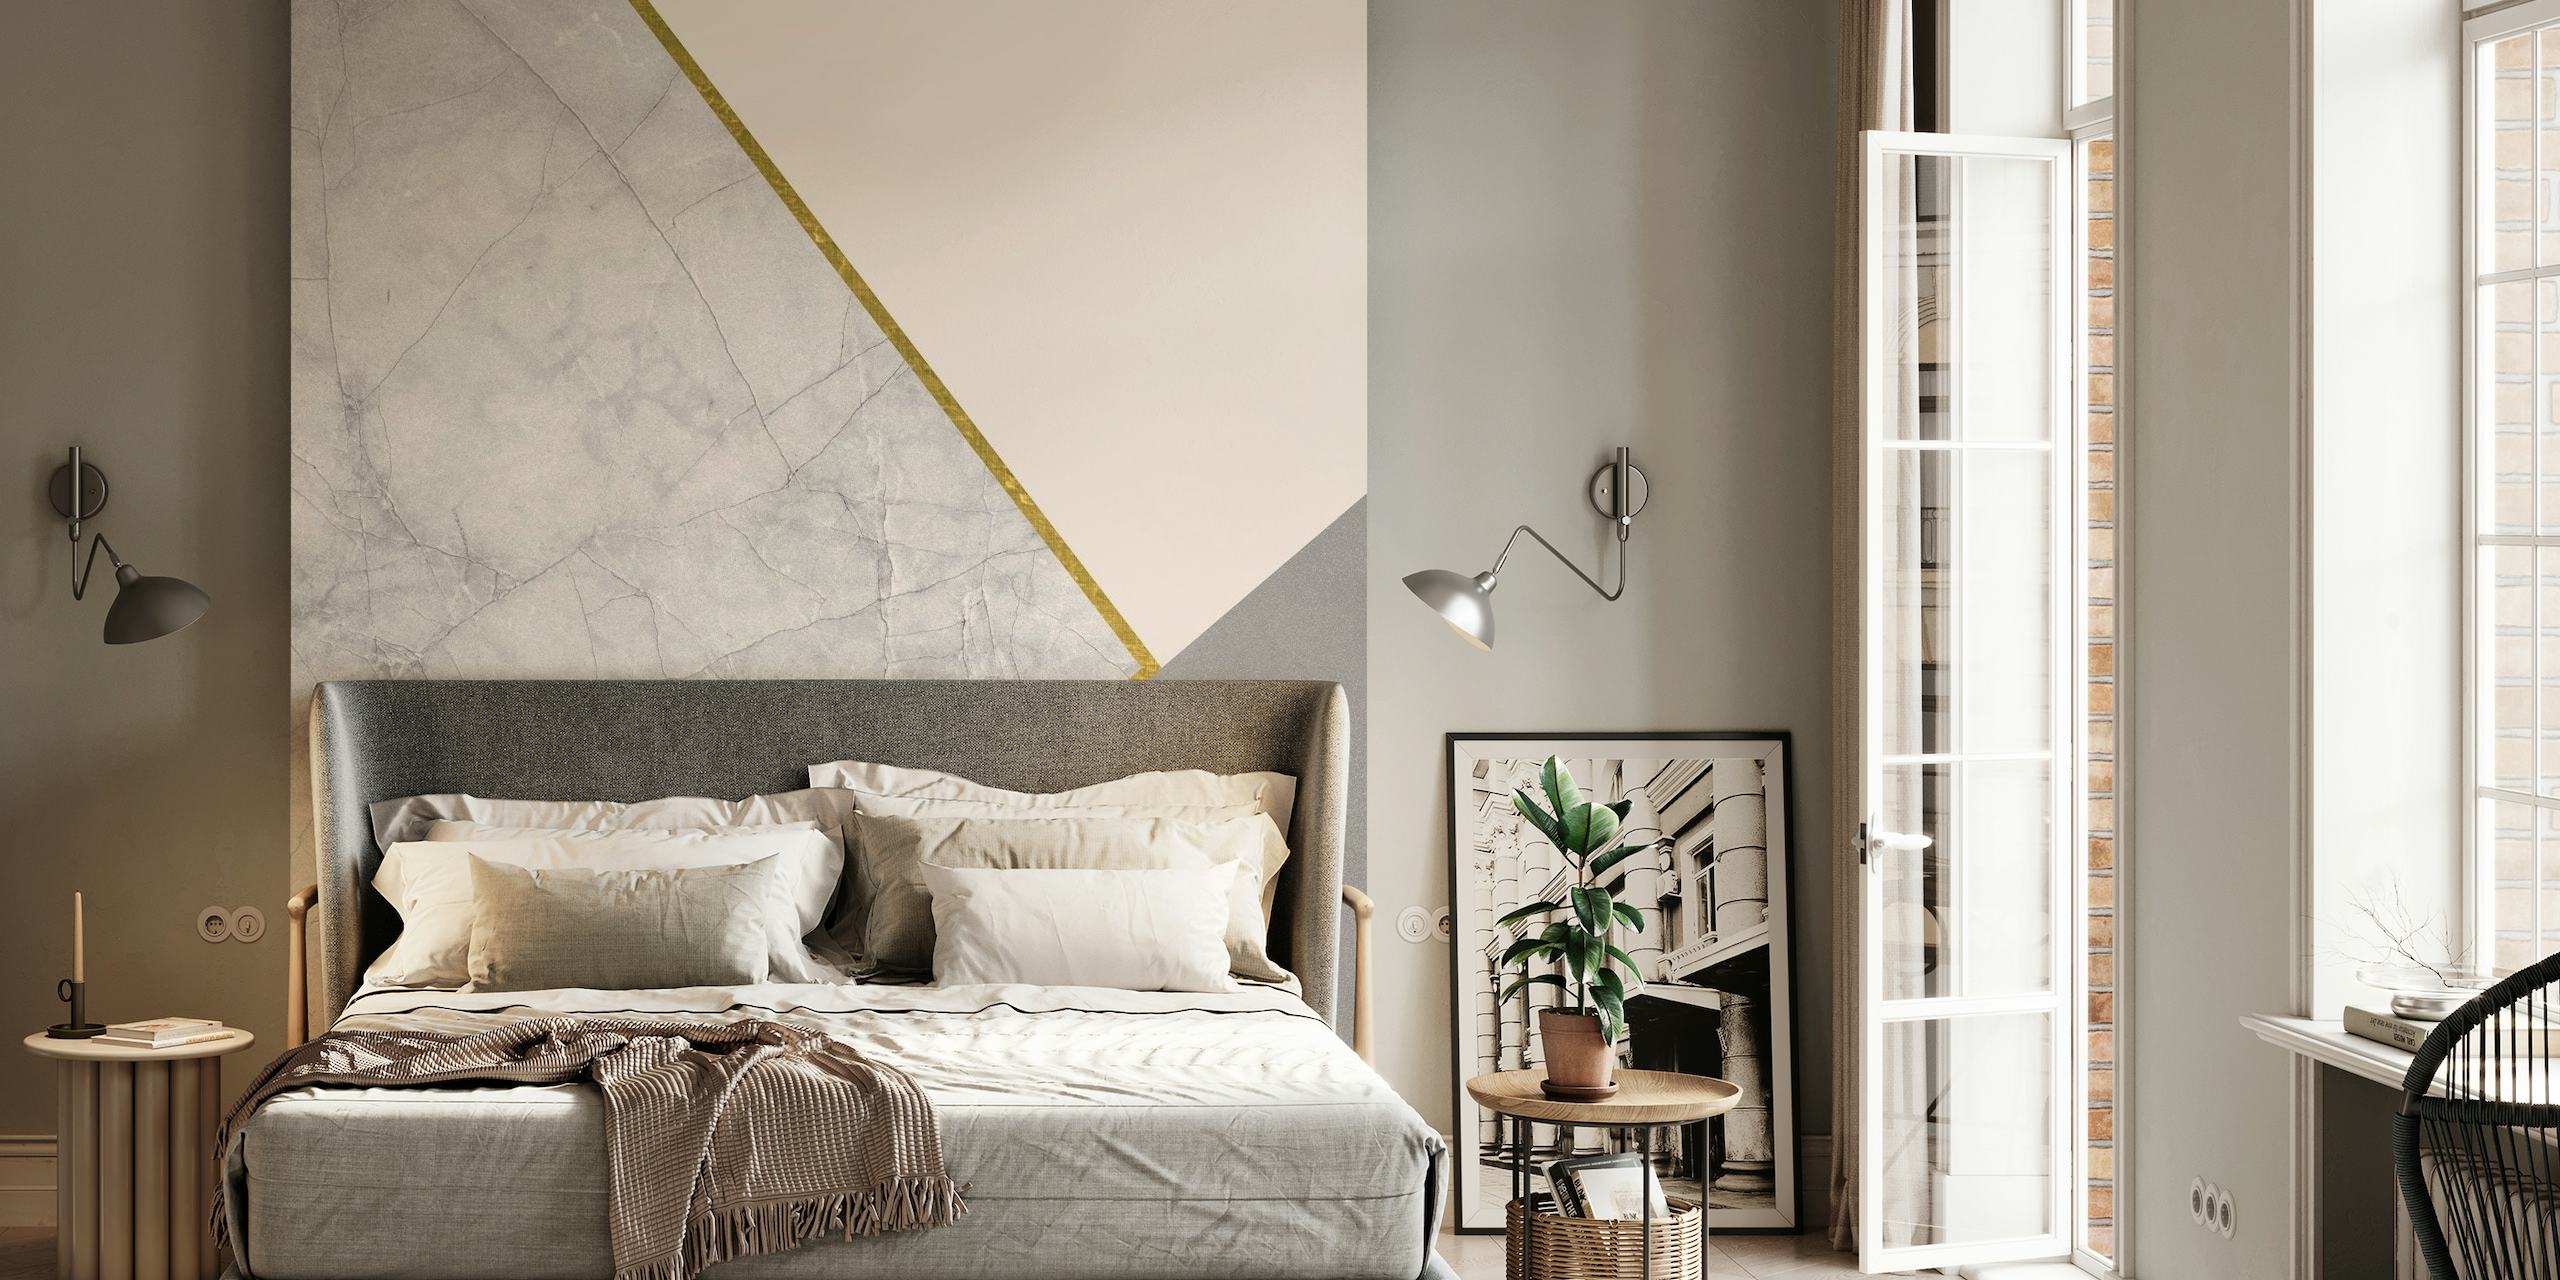 Chique geometrische muurschildering met marmeren, roze en grijze delen, gescheiden door gouden lijnen